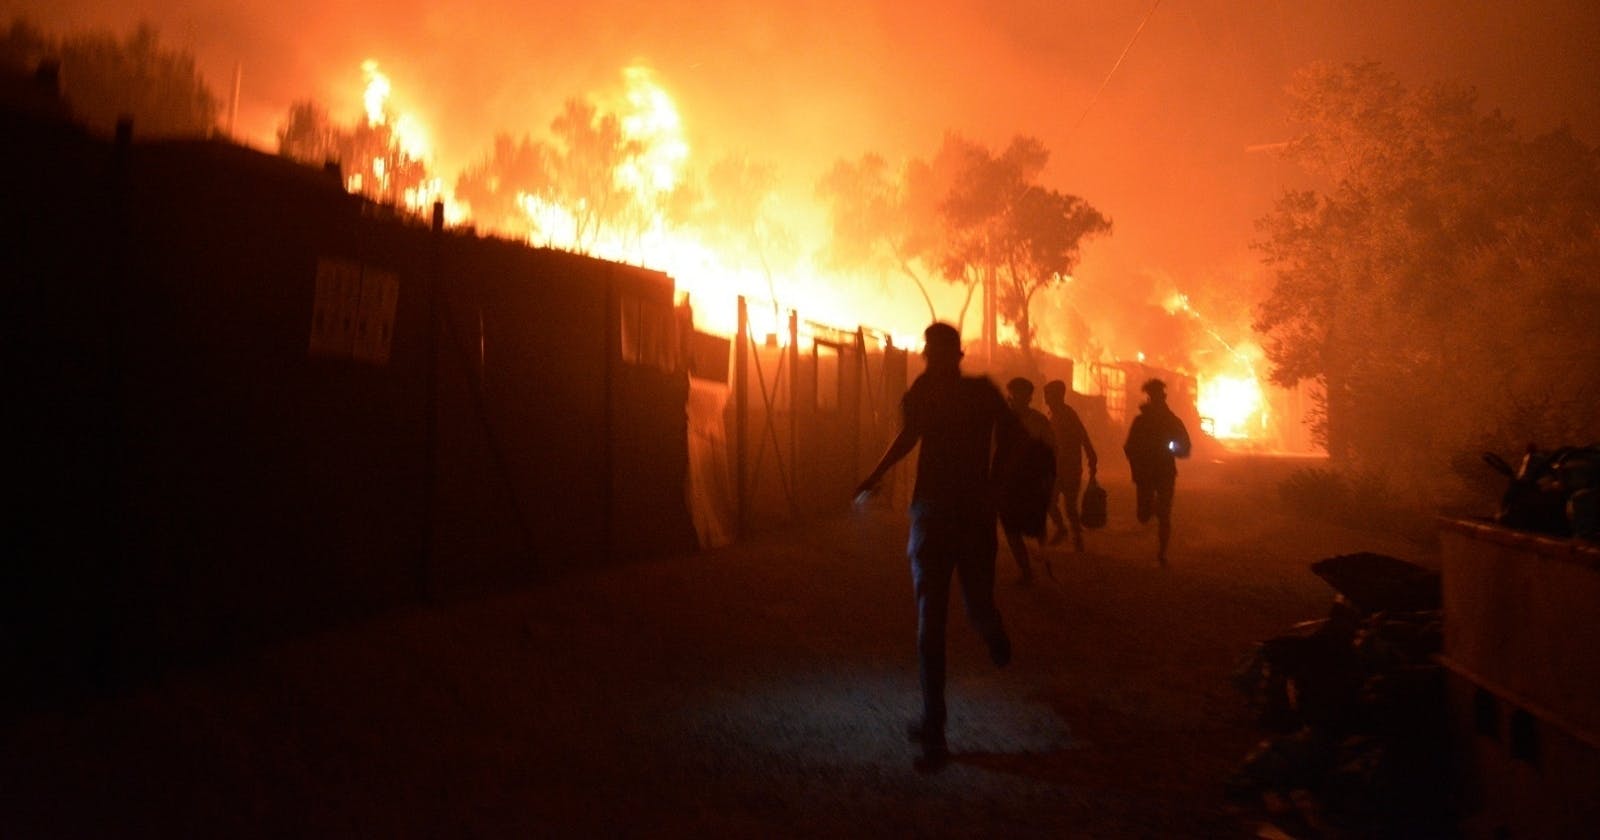 Man sieht Beretterverschläge in der Nacht, die in Flammen stehen. Davor die Silhouetten von fliehenden Menschen.